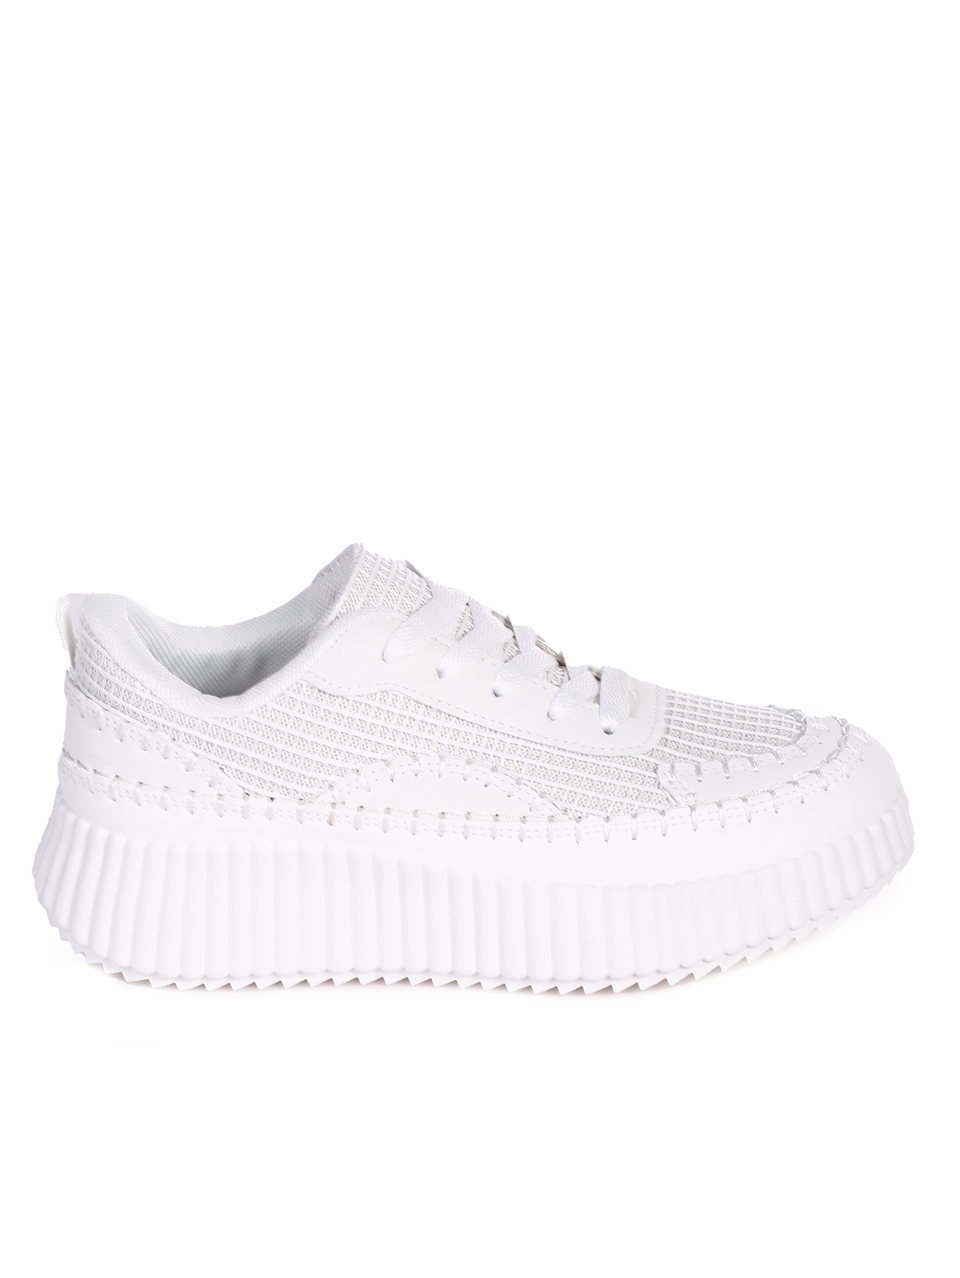 Ежедневни обувки от текстил в бяло 3U-24079 white